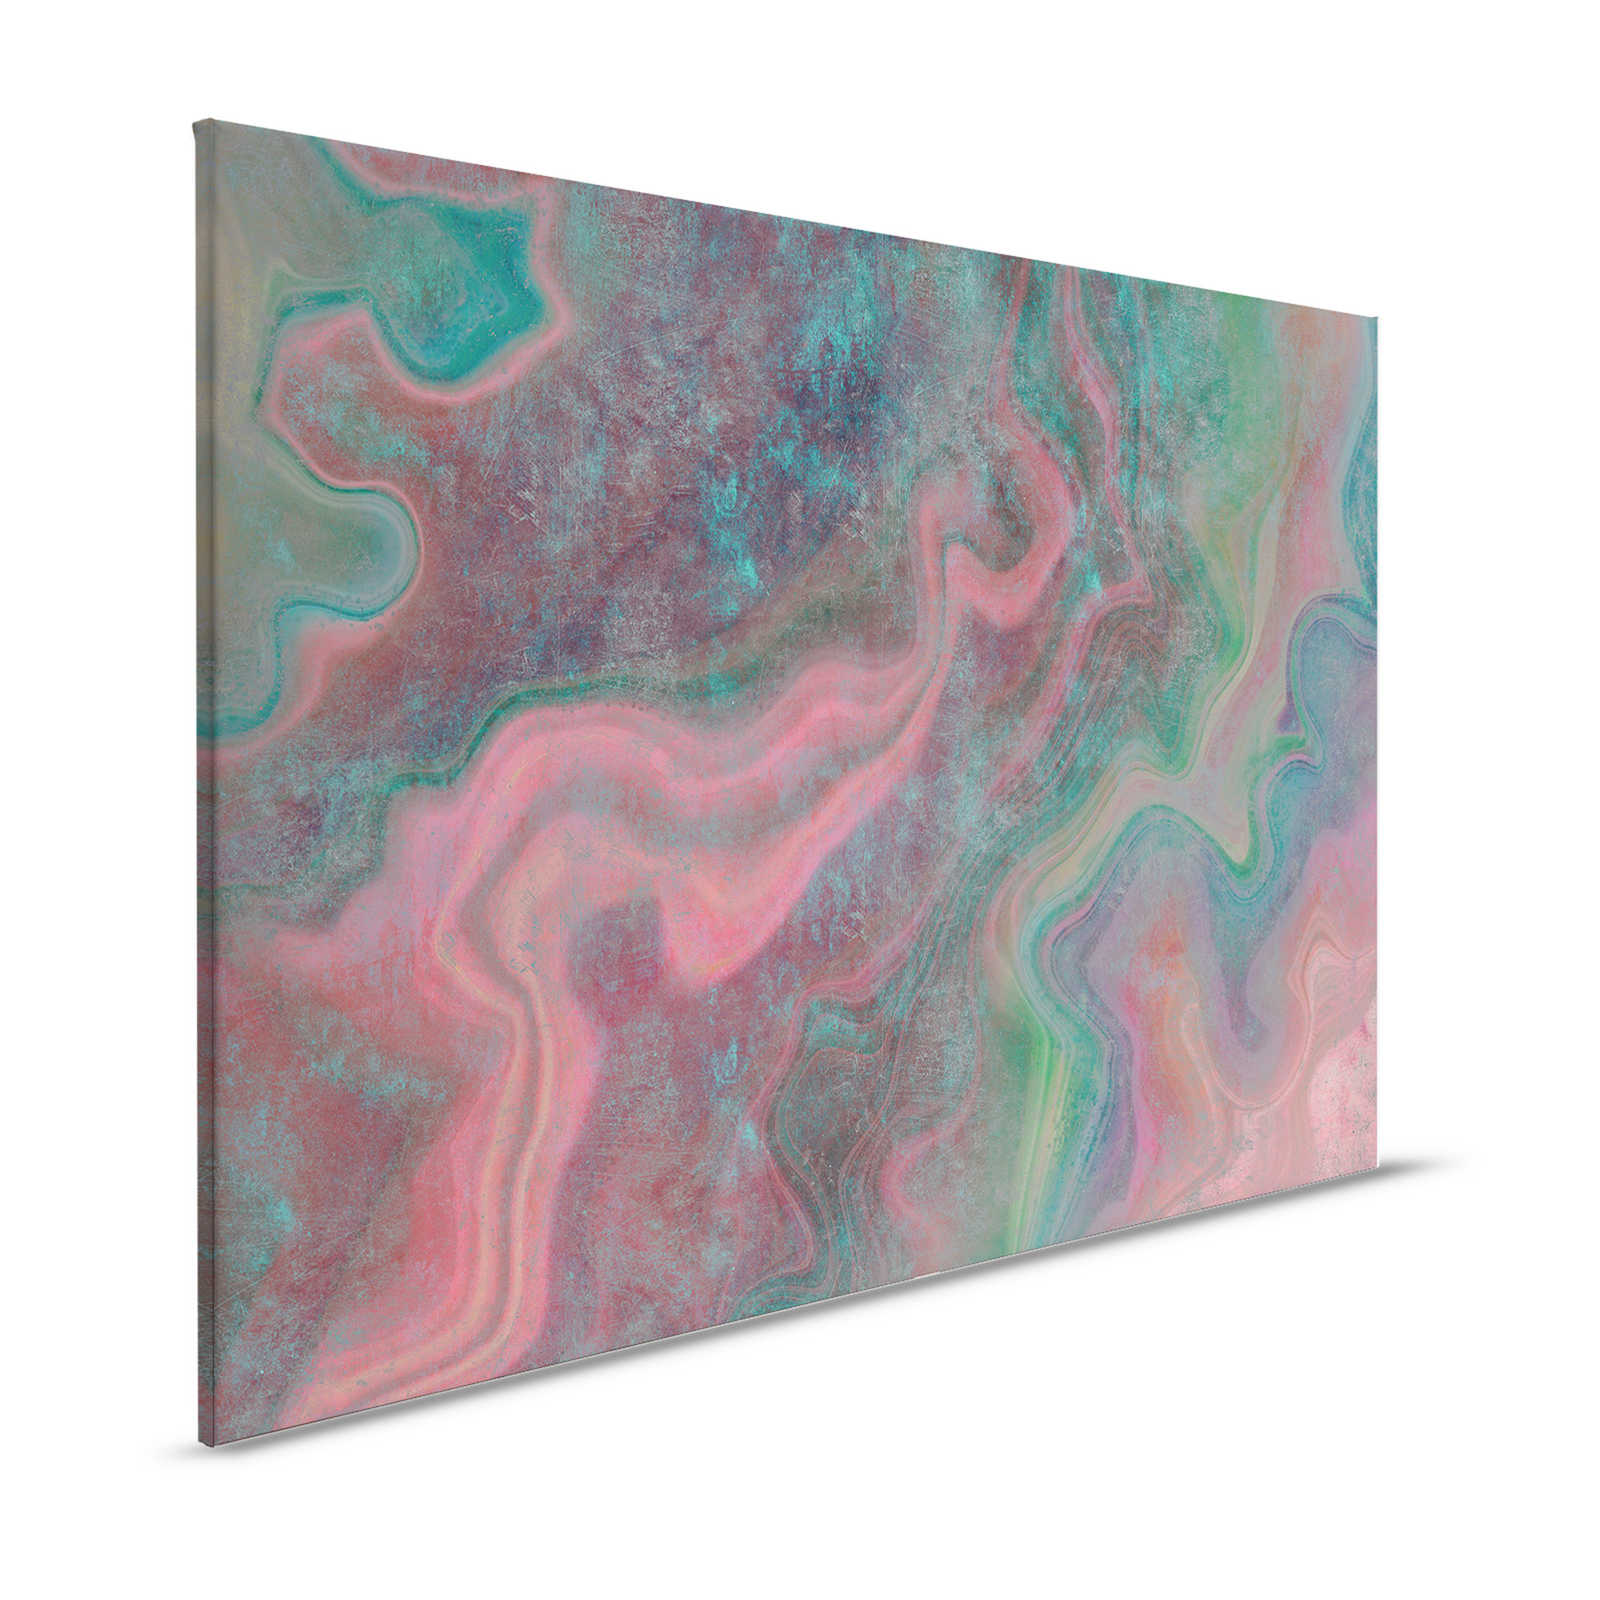 Marmo 1 - Marmo colorato come quadro su tela con struttura a graffi - 1,20 m x 0,80 m
